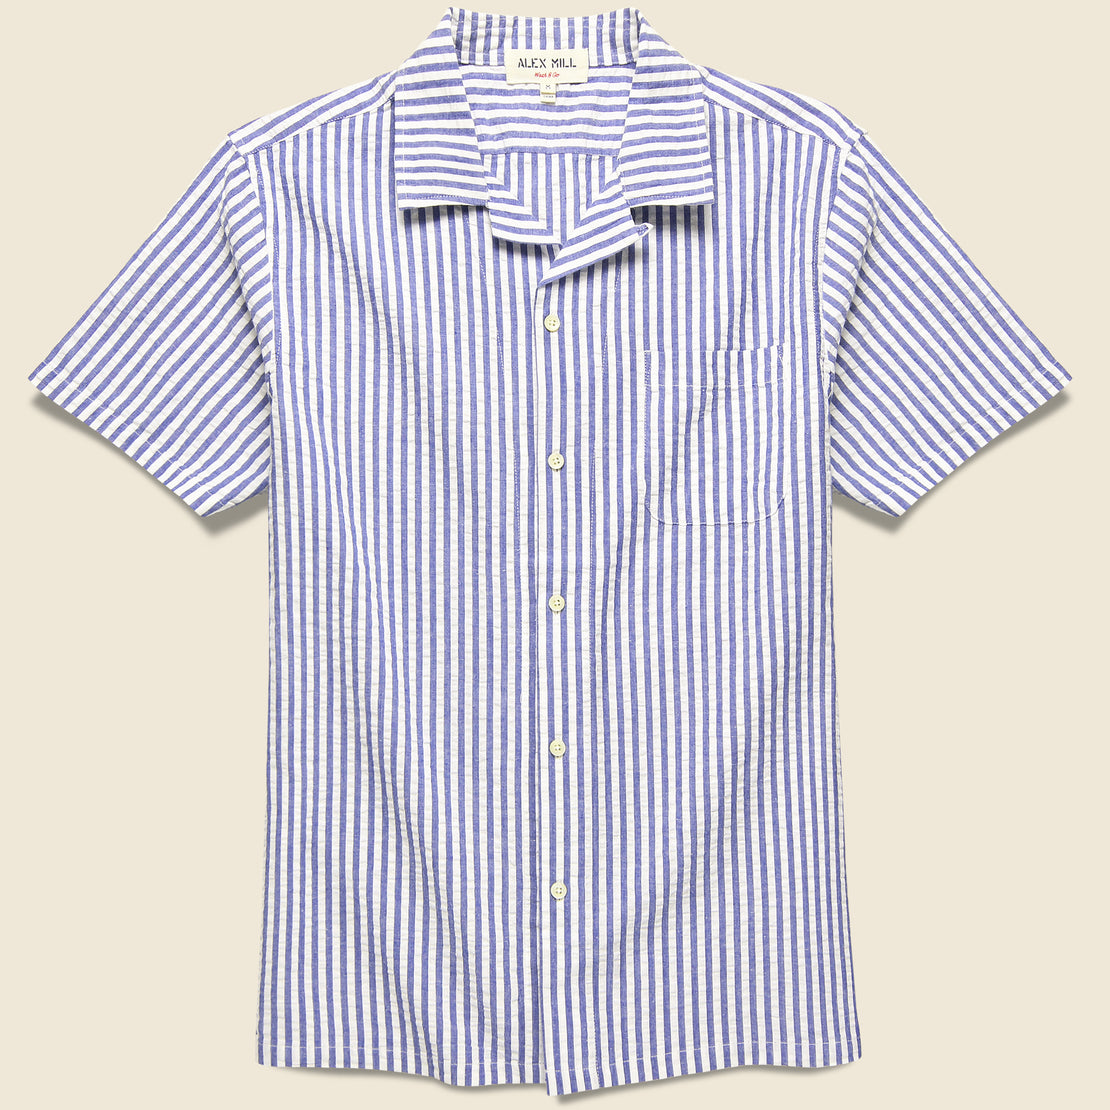 Alex Mill Seersucker Camp Shirt - Blue/White Stripes